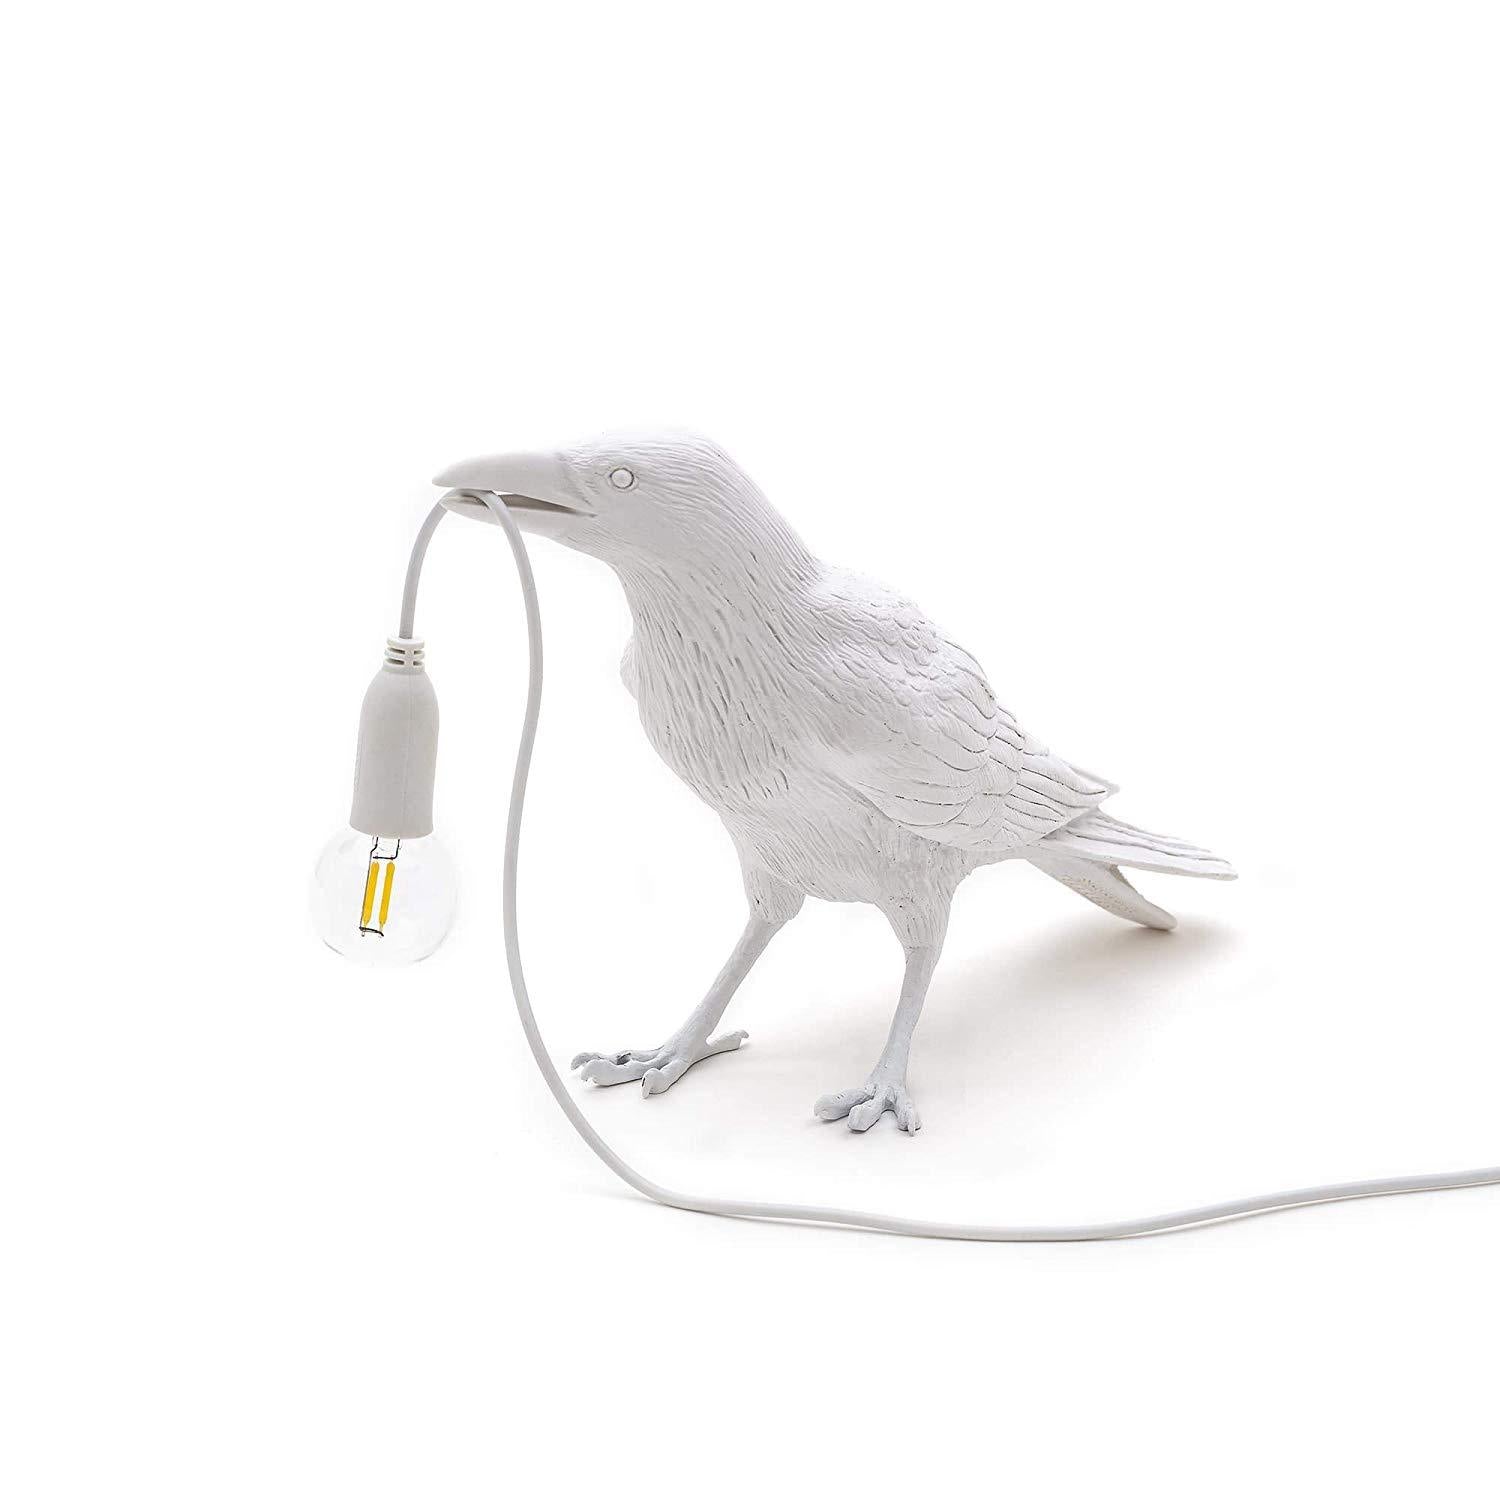 Bird Lamp - White Playing